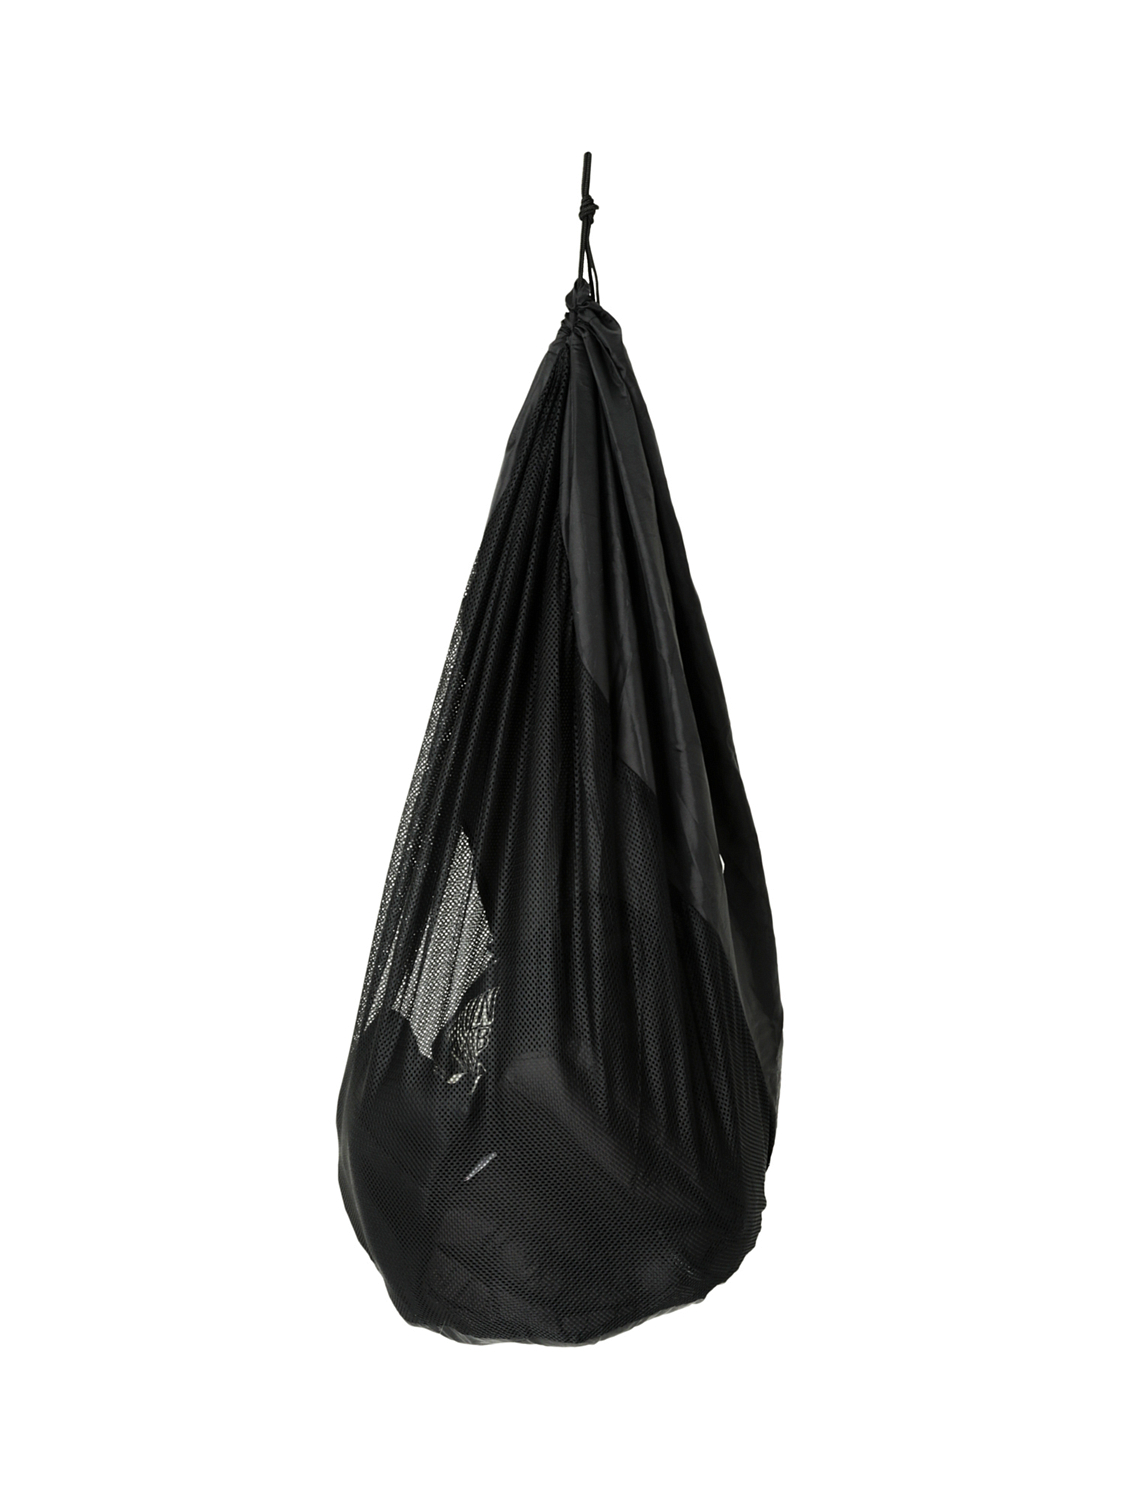 Мешок упаковочный Salewa Sb Storage Bag Black